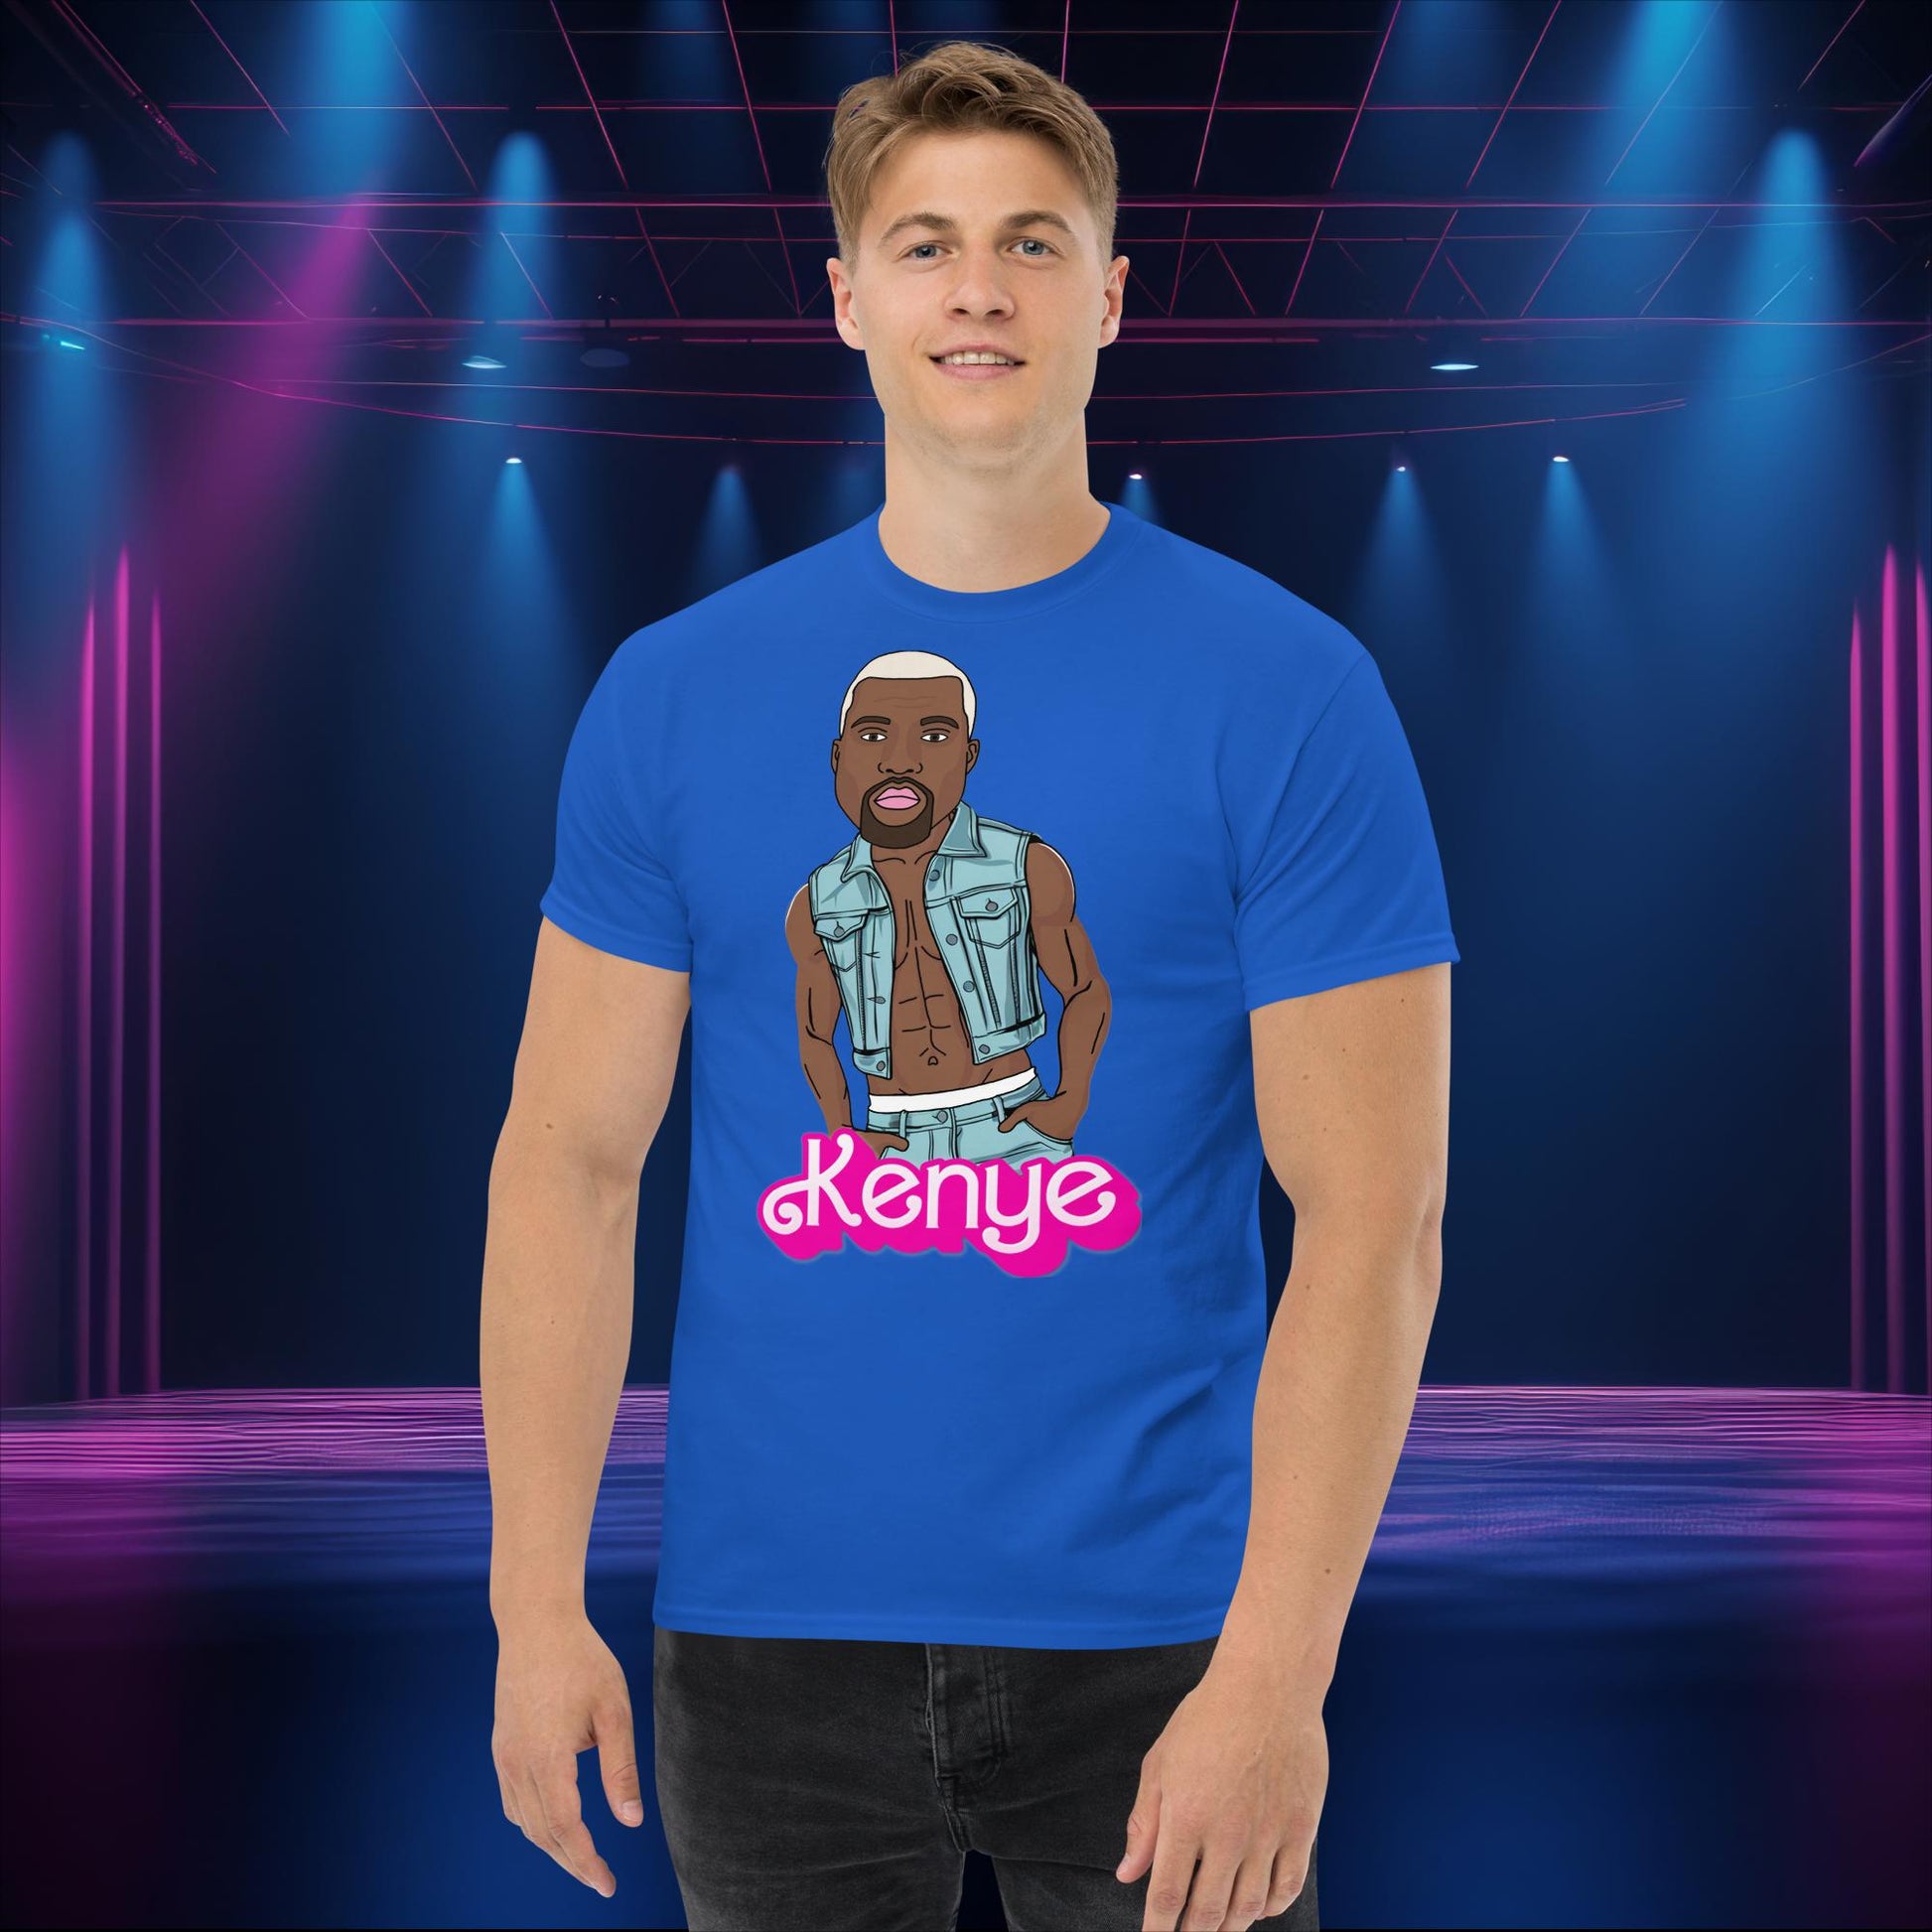 Kanye West Shirt Kanye West T-shirt Kanye Tshirt Kanye T shirt Kanye Tee Barbie Shirt Ken Shirt Ryan Gosling Shirt Barbie Gift Barbie Tshirt Next Cult Brand Barbie, Kanye West, Ken, Movies, Music, Ryan Gosling